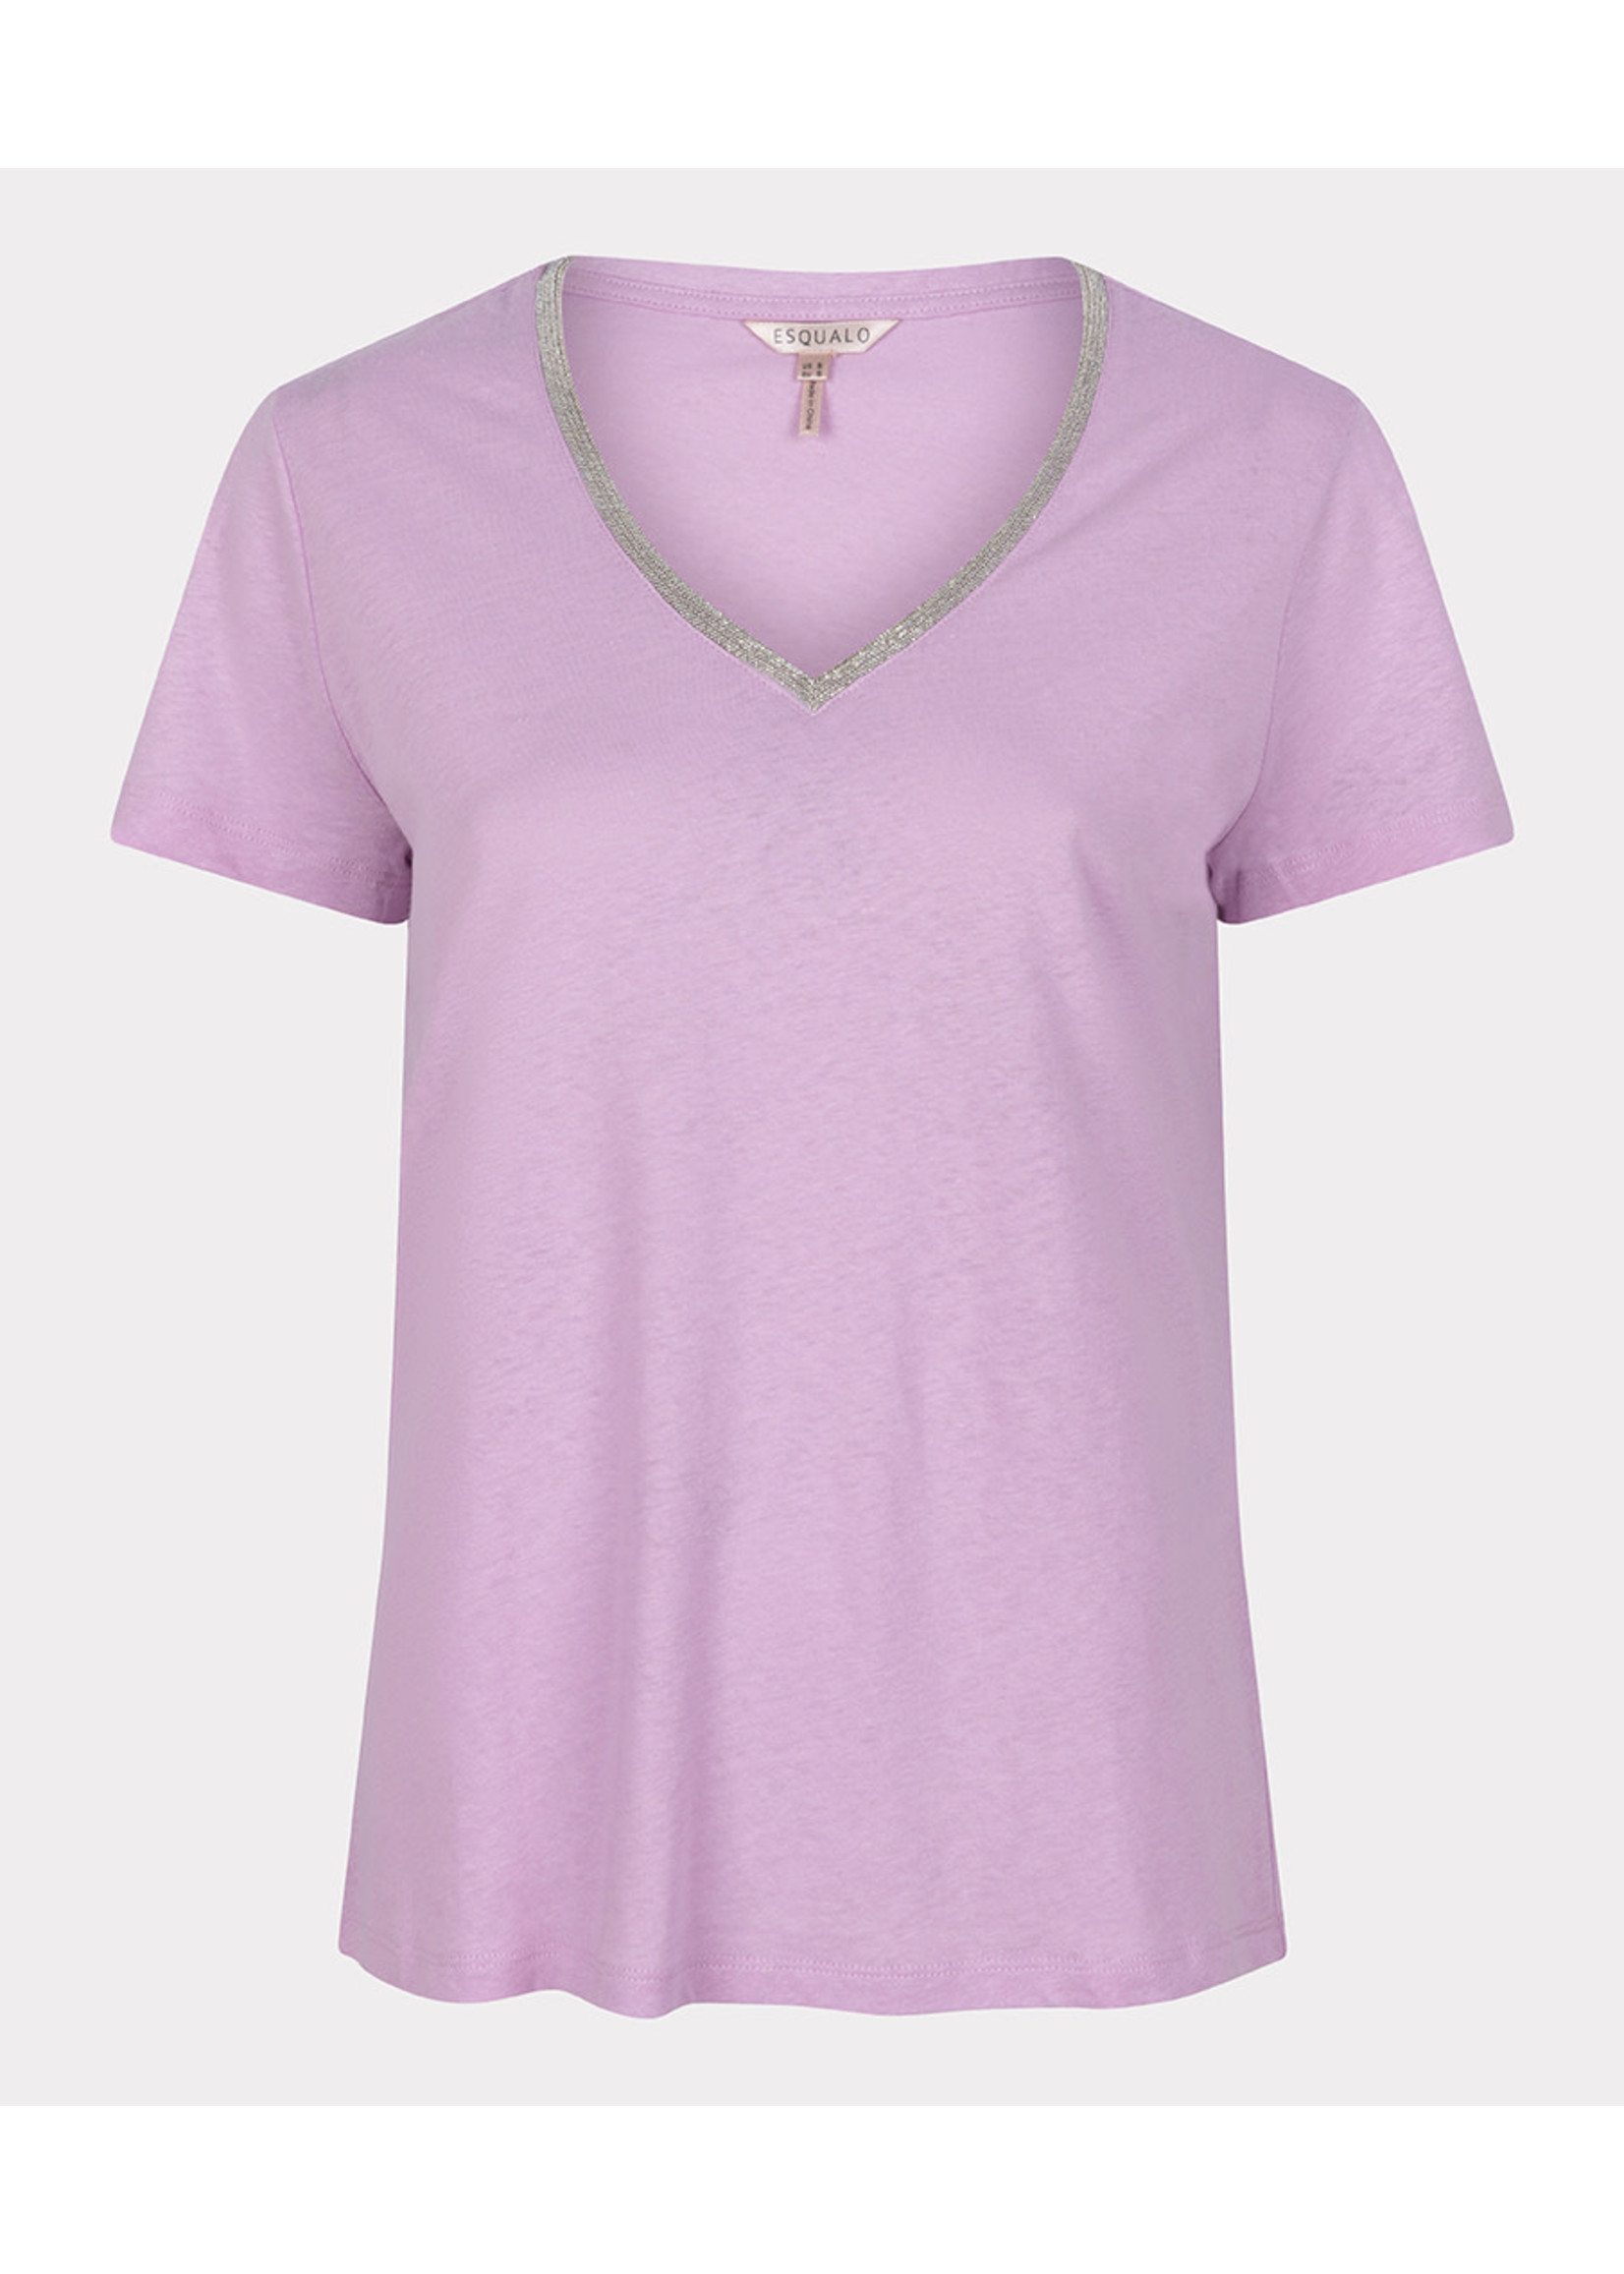 Esqualo T-shirt fancy neckline	Violet